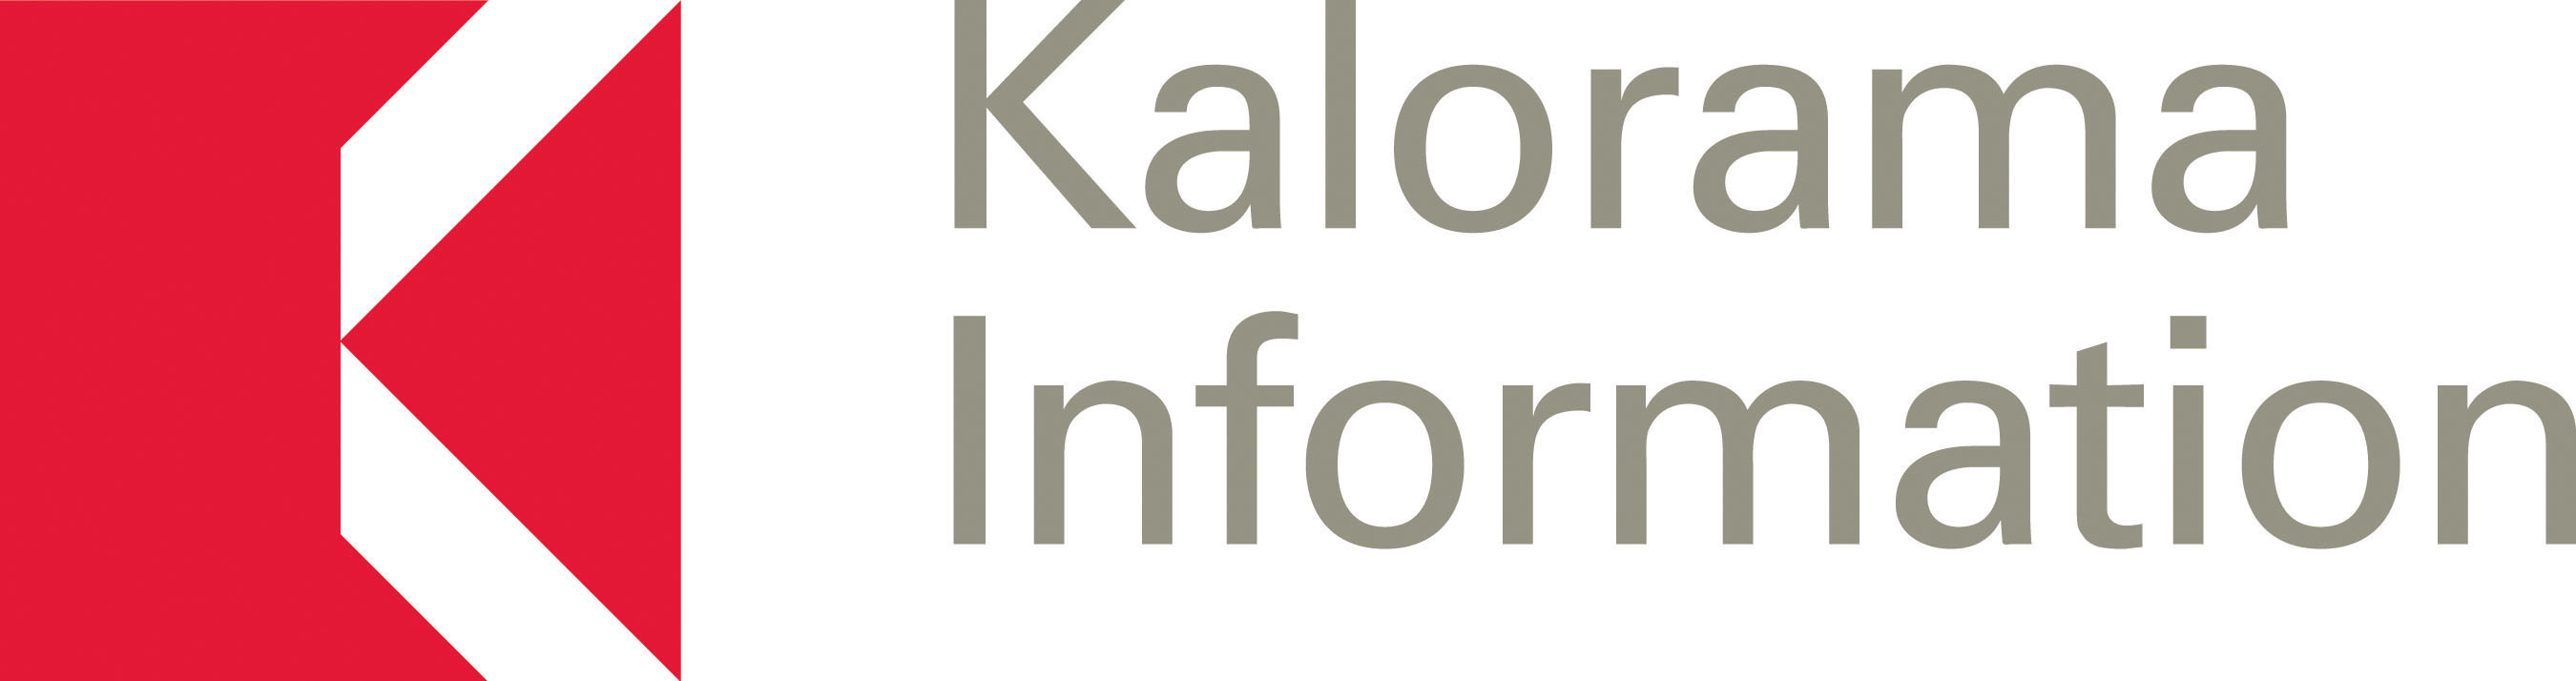 Kalorama Information Logo (PRNewsFoto/Kalorama Information)